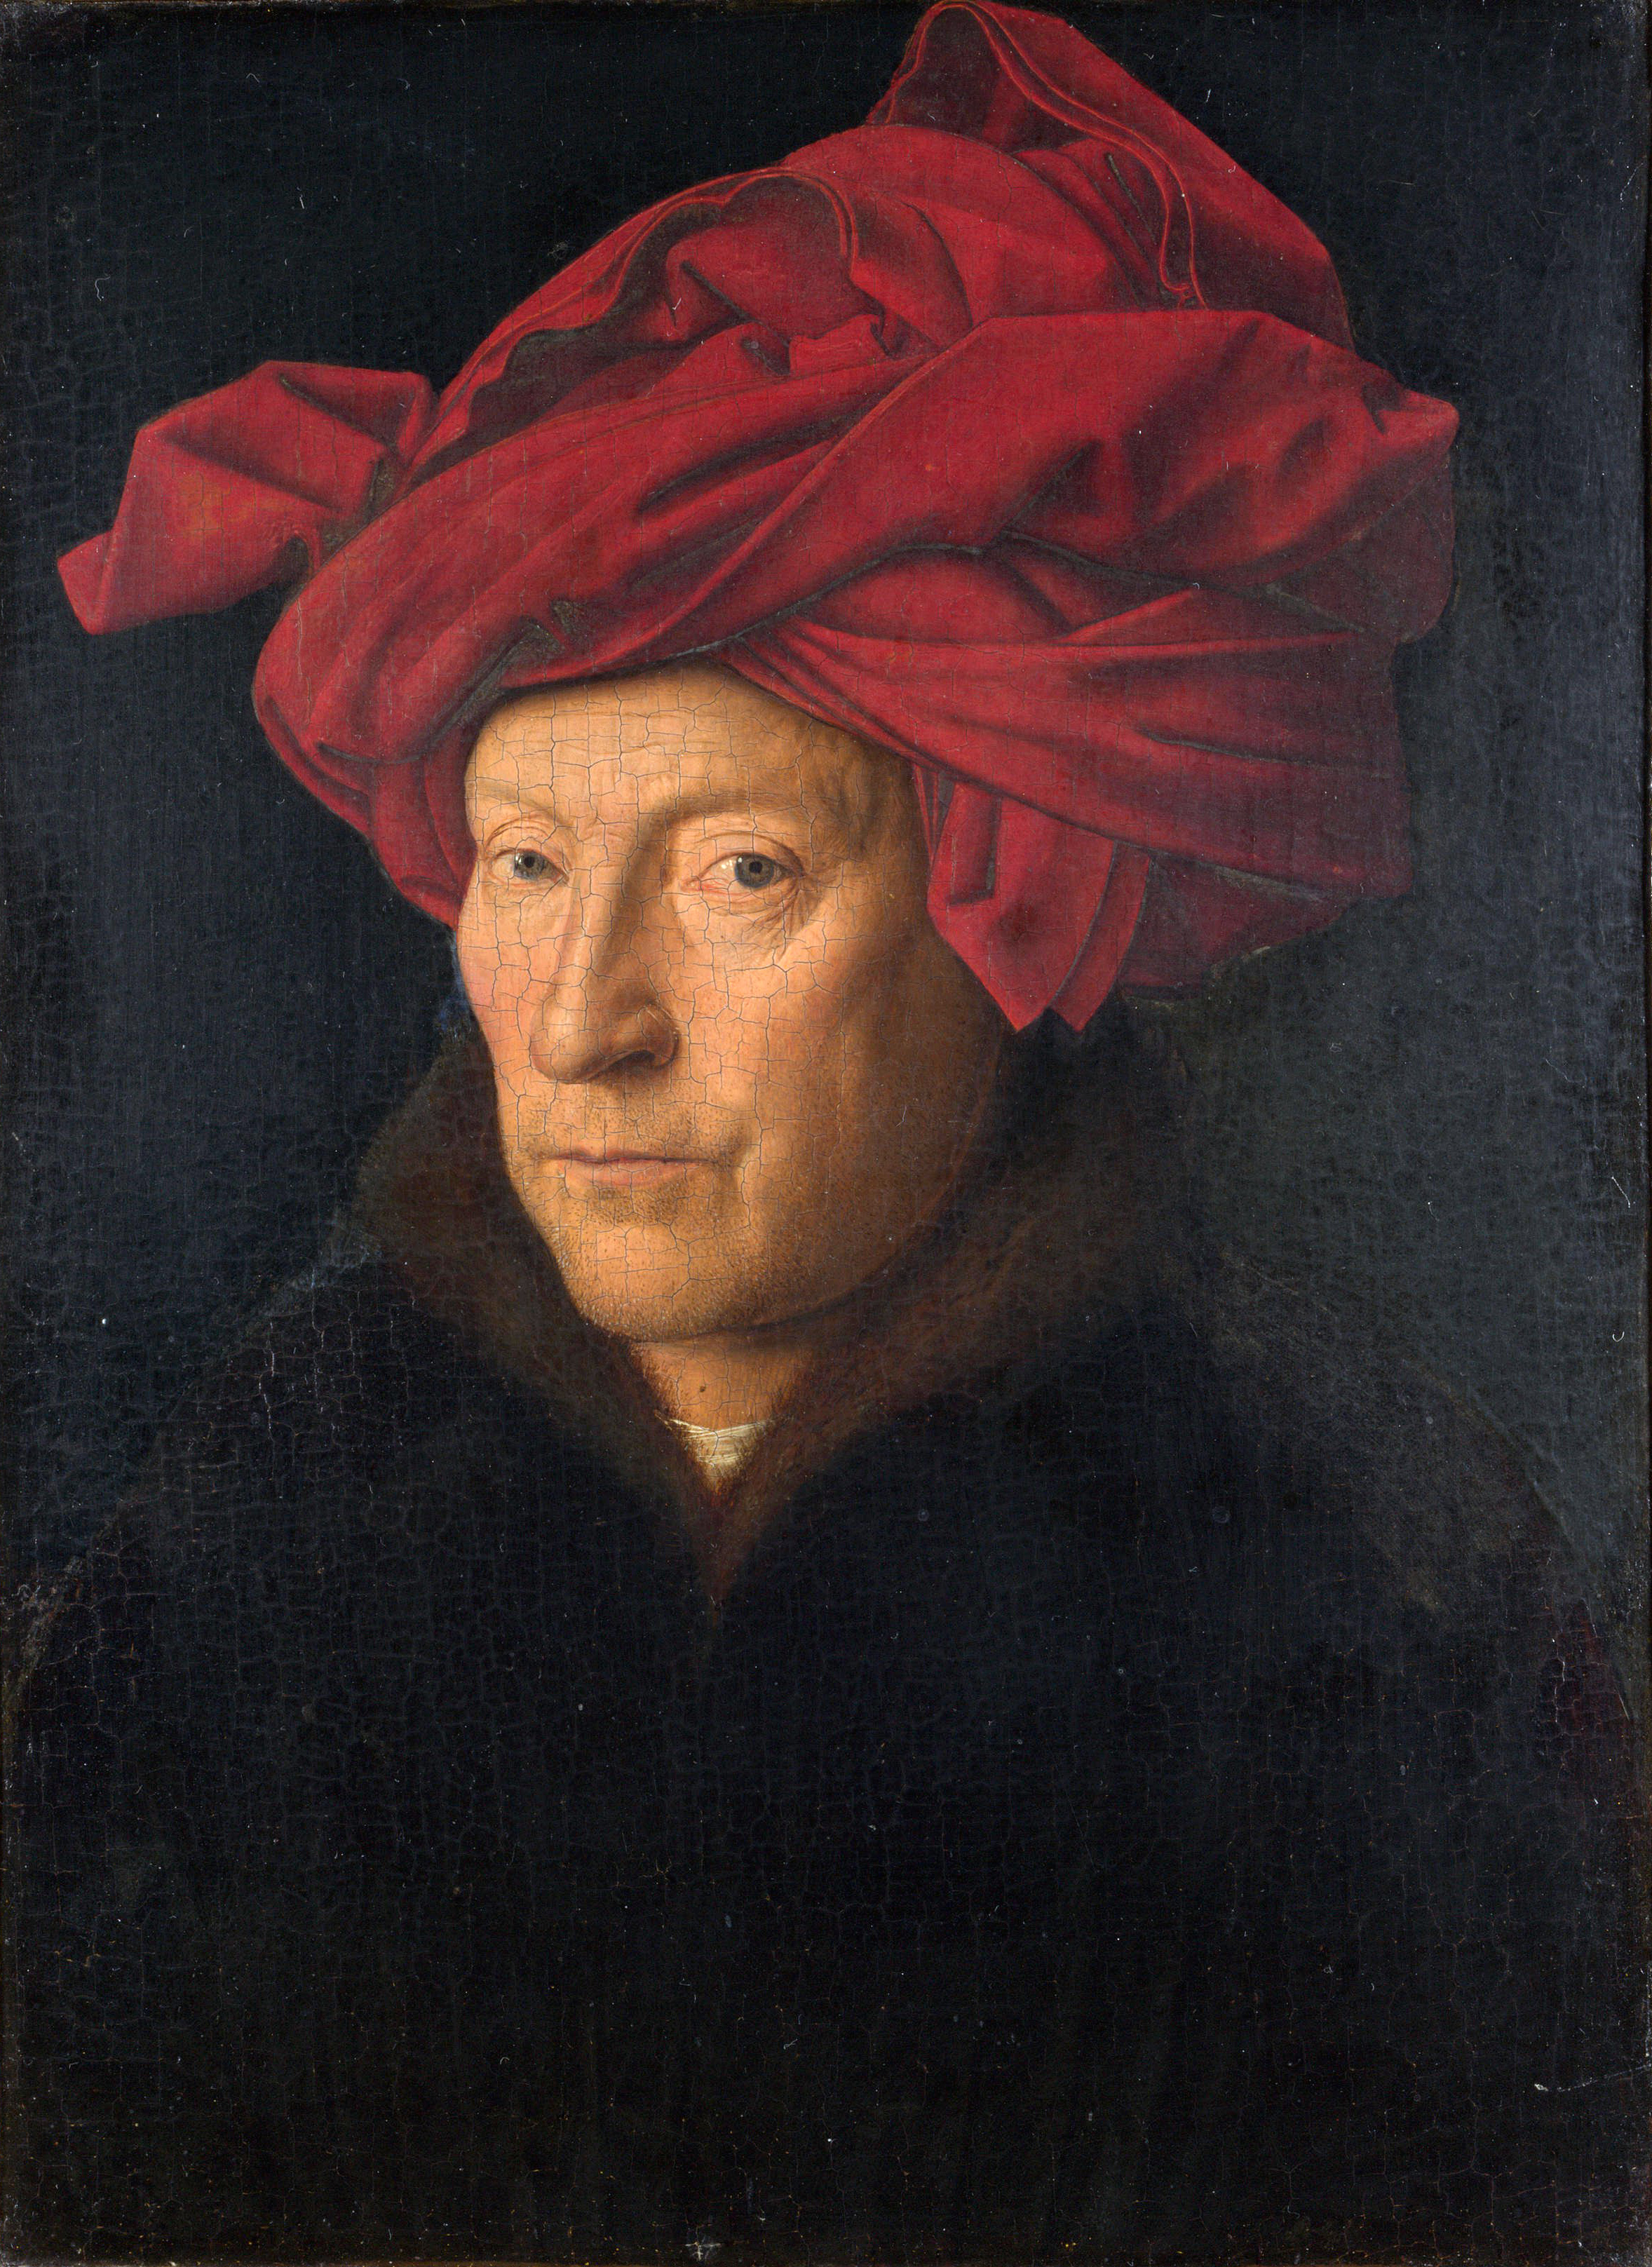 Portrait of a Man (Self-portrait?) by Jan van Eyck - 1433 - 26 × 19 cm National Gallery